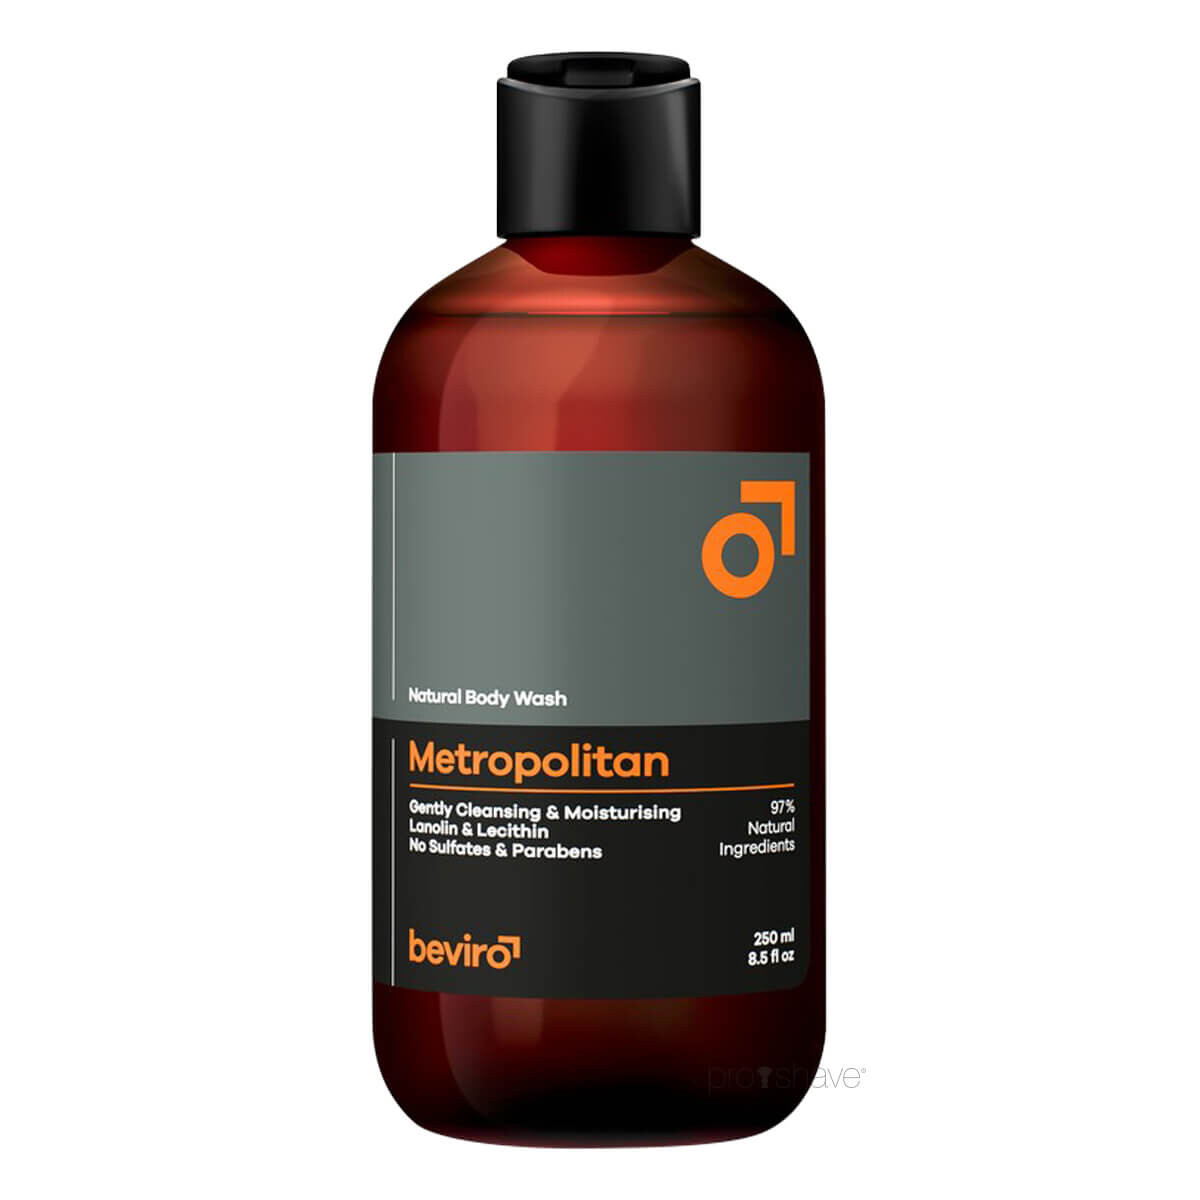 Billede af Beviro Natural Body Wash, Metropolitan, 250 ml.